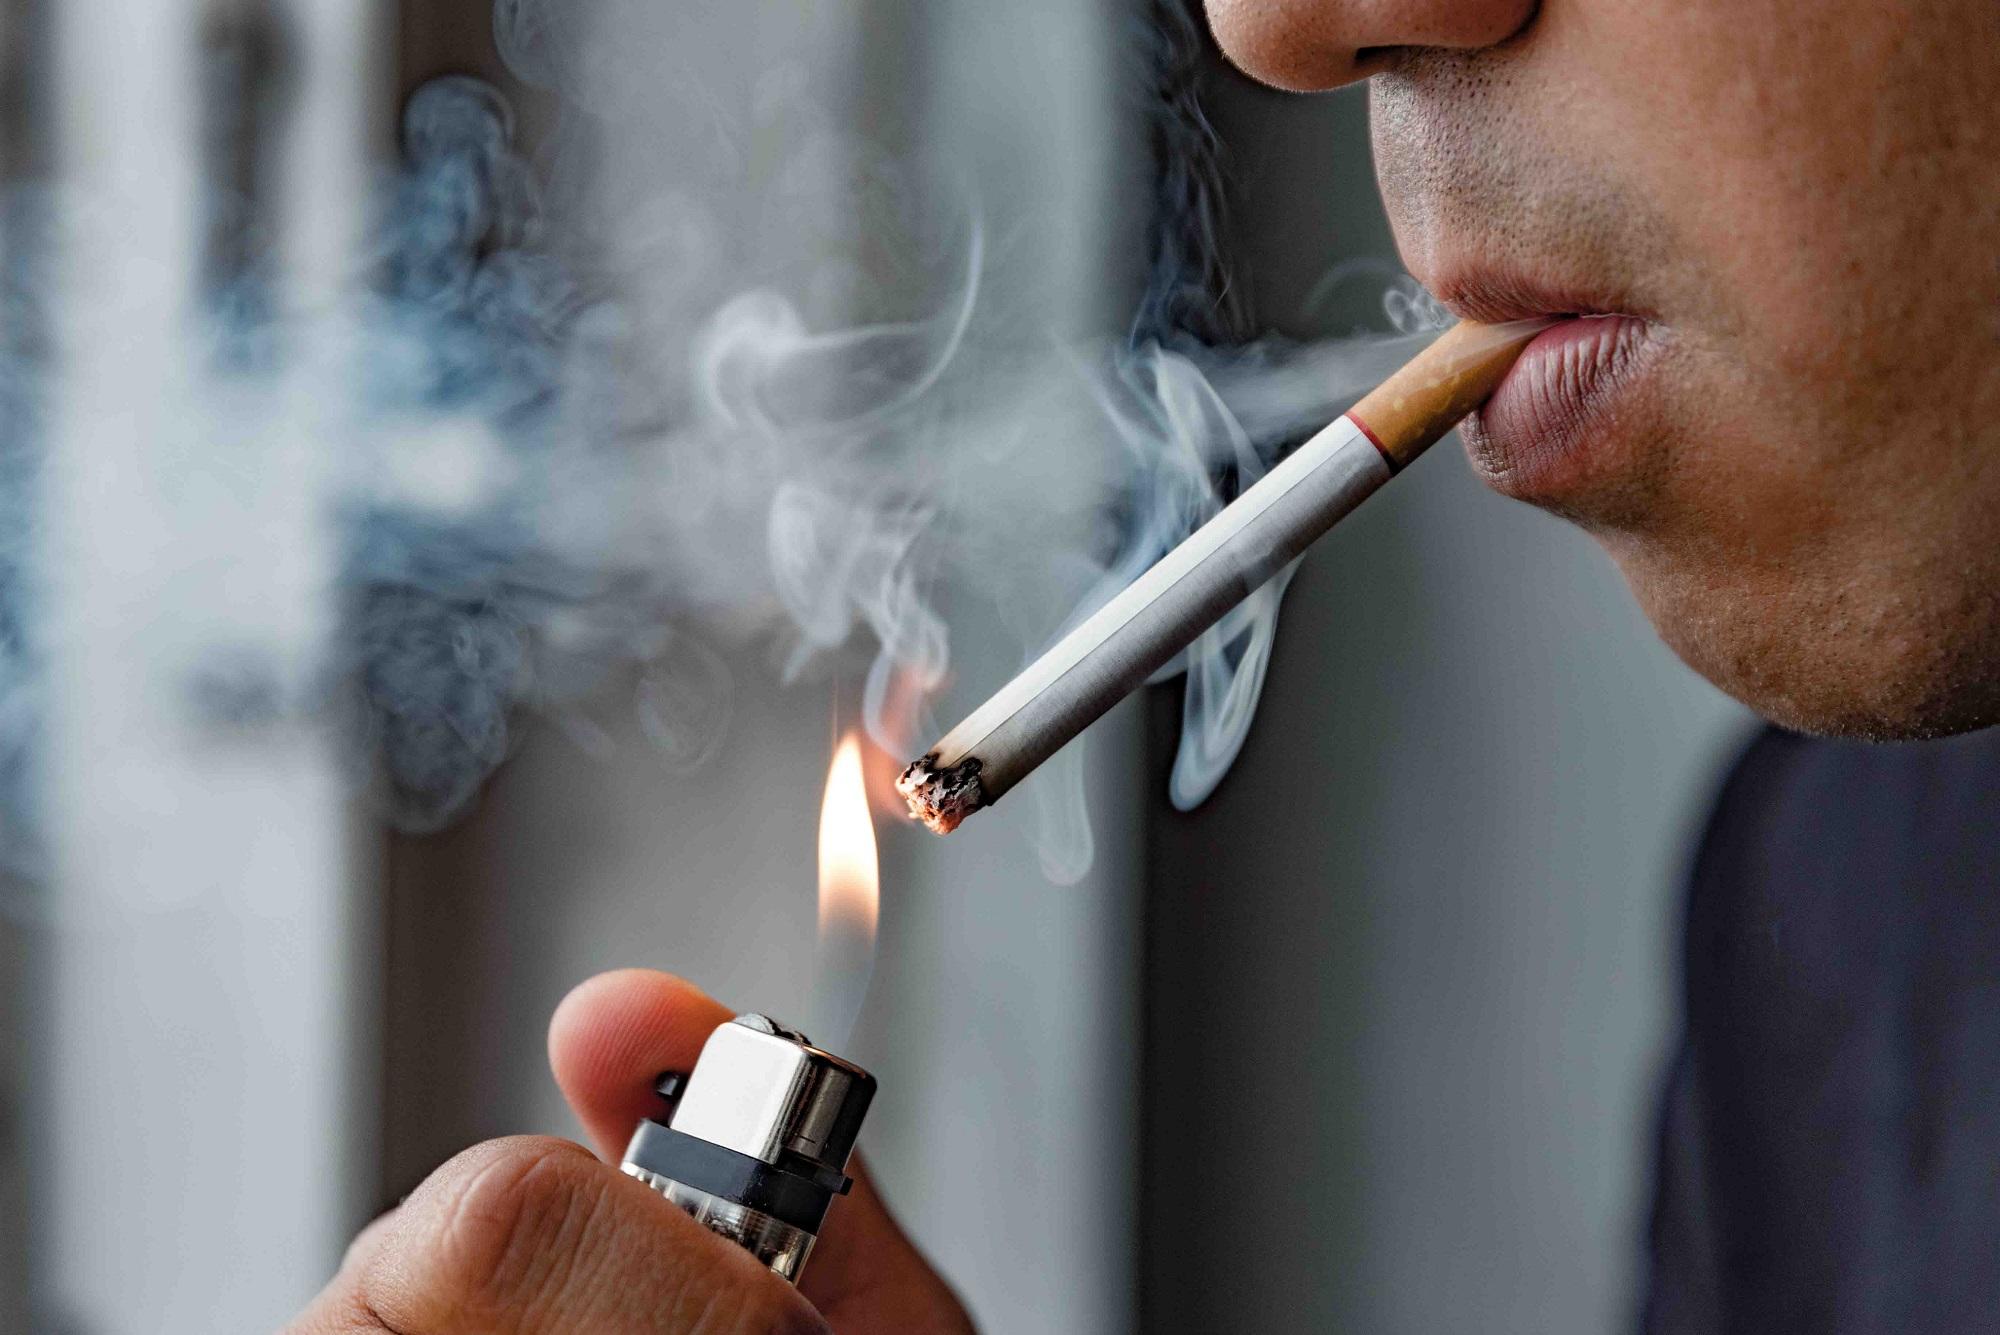 هكذا علق الأردنيون على قرار منع كل أشكال التدخين في الأماكن المغلقة